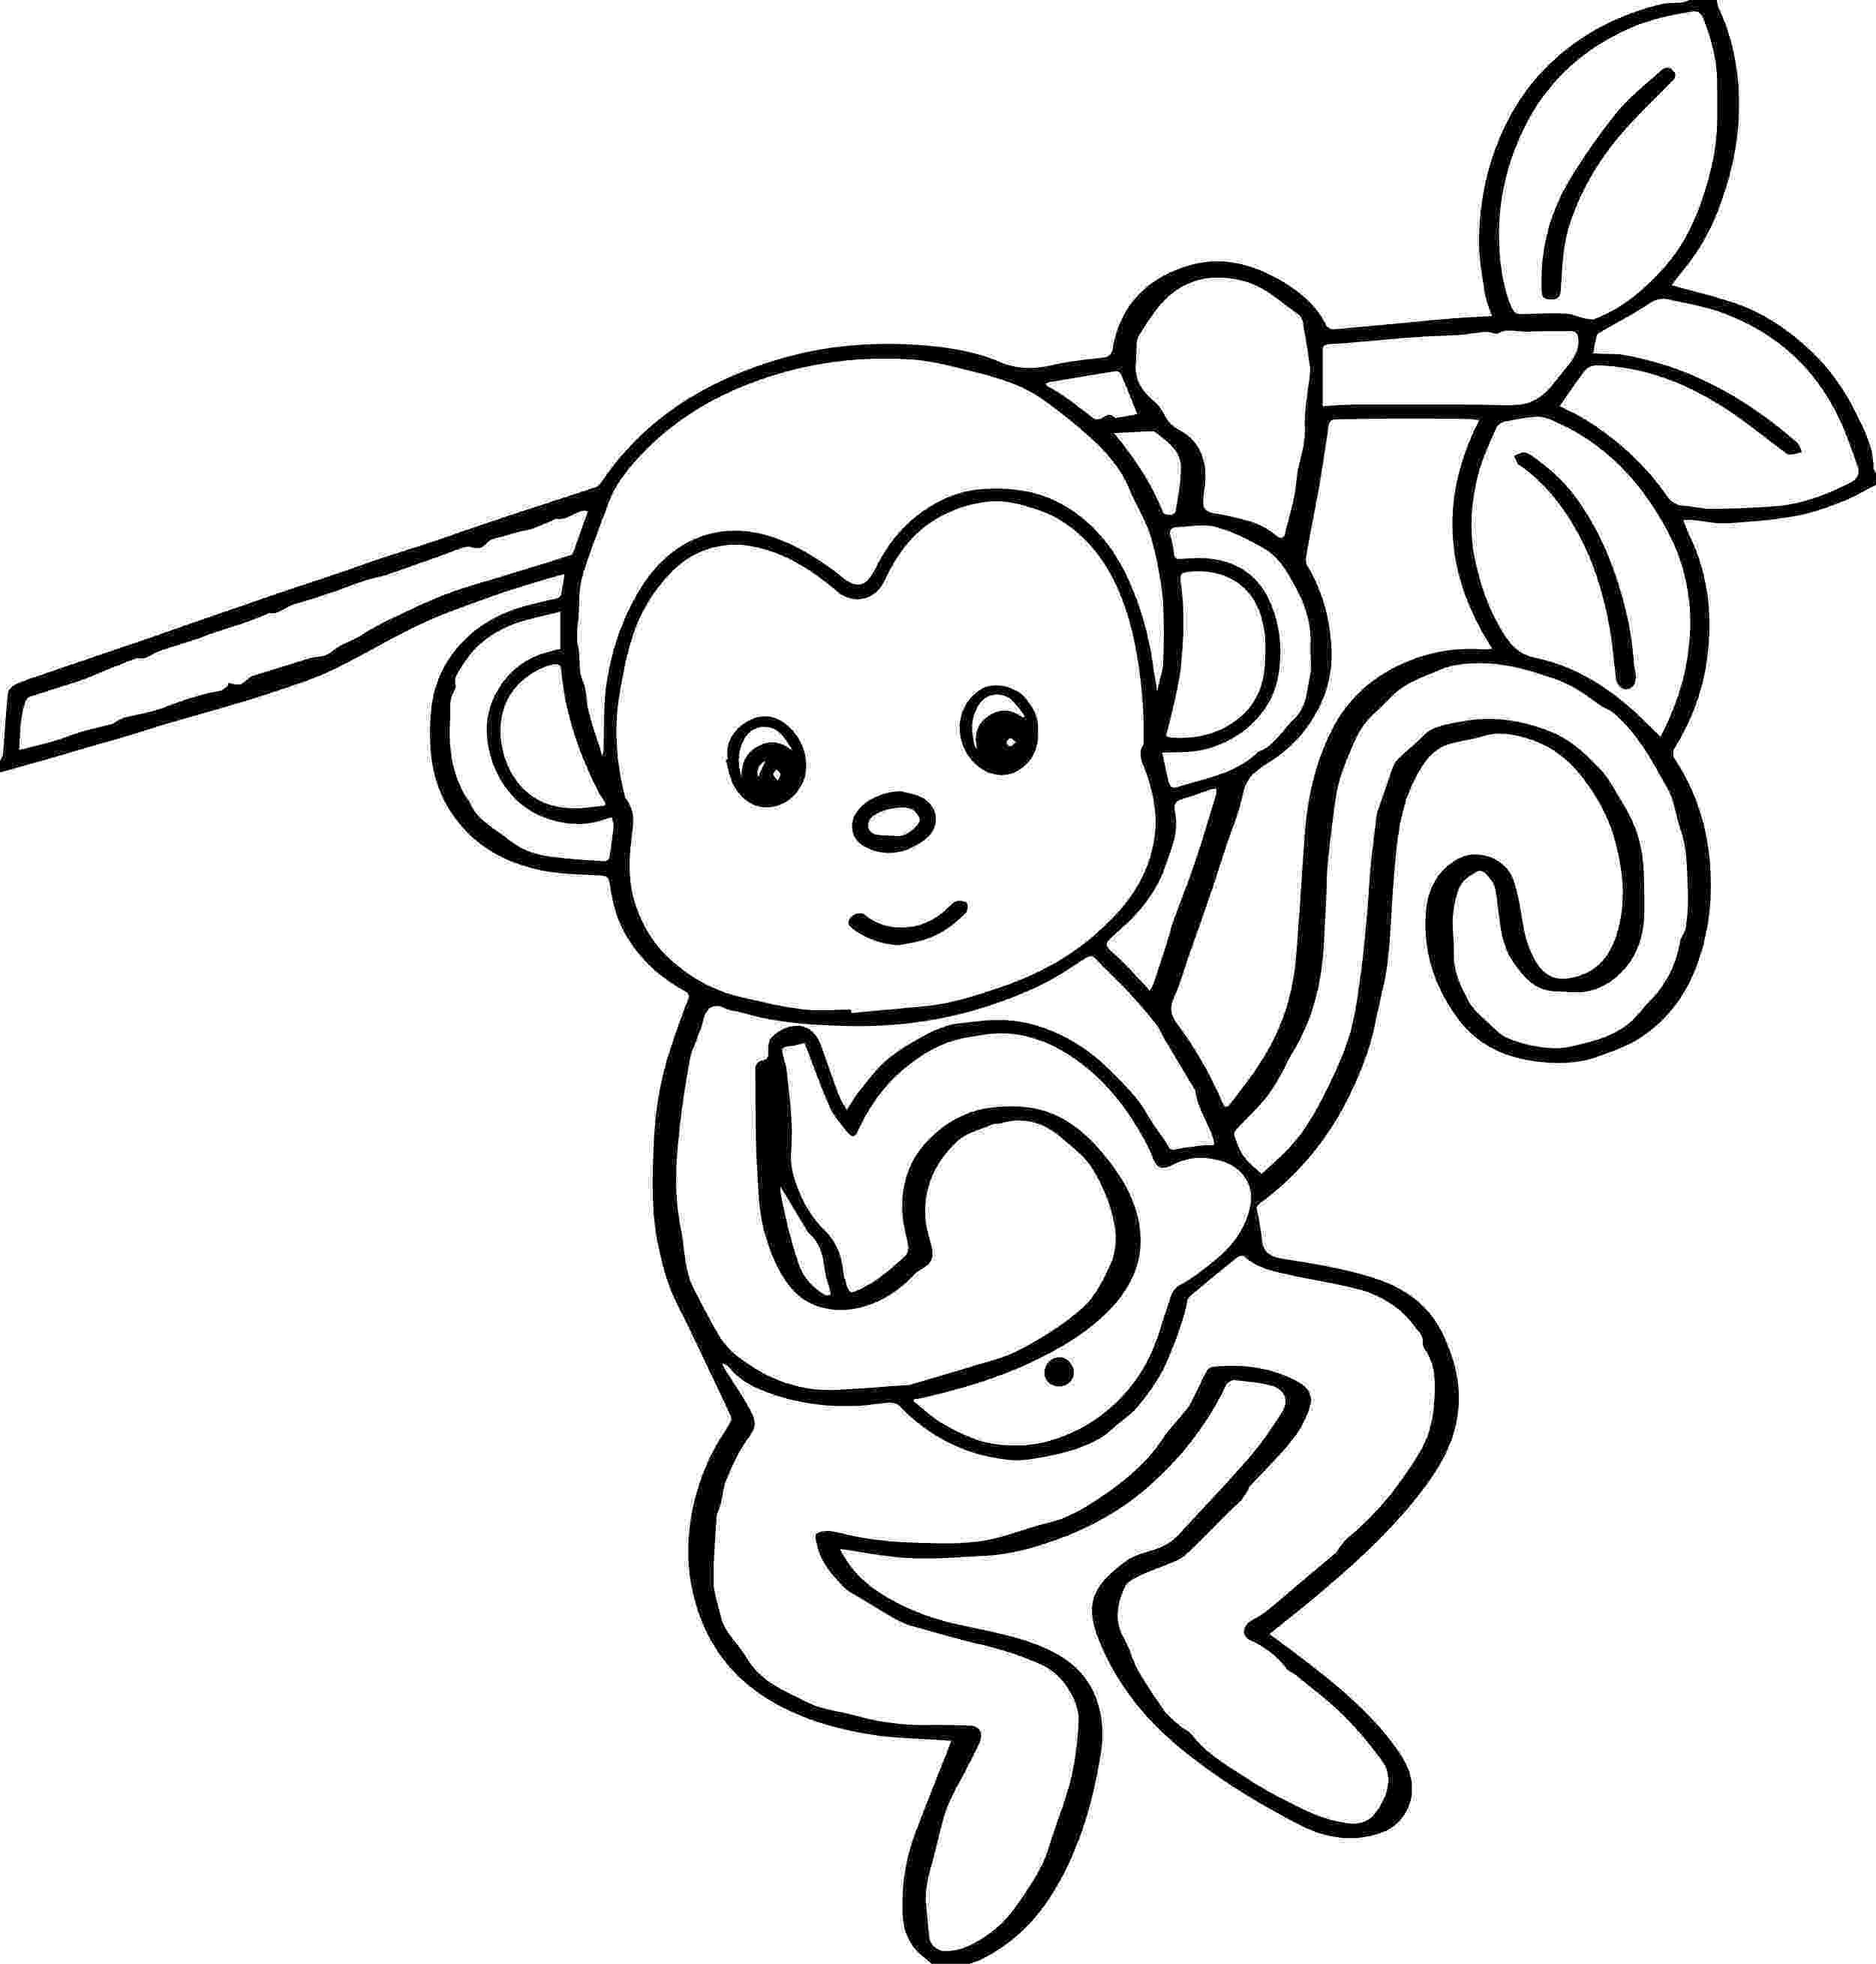 monkey coloring images cartoon animals kids monkey coloring page wecoloringpagecom coloring images monkey 